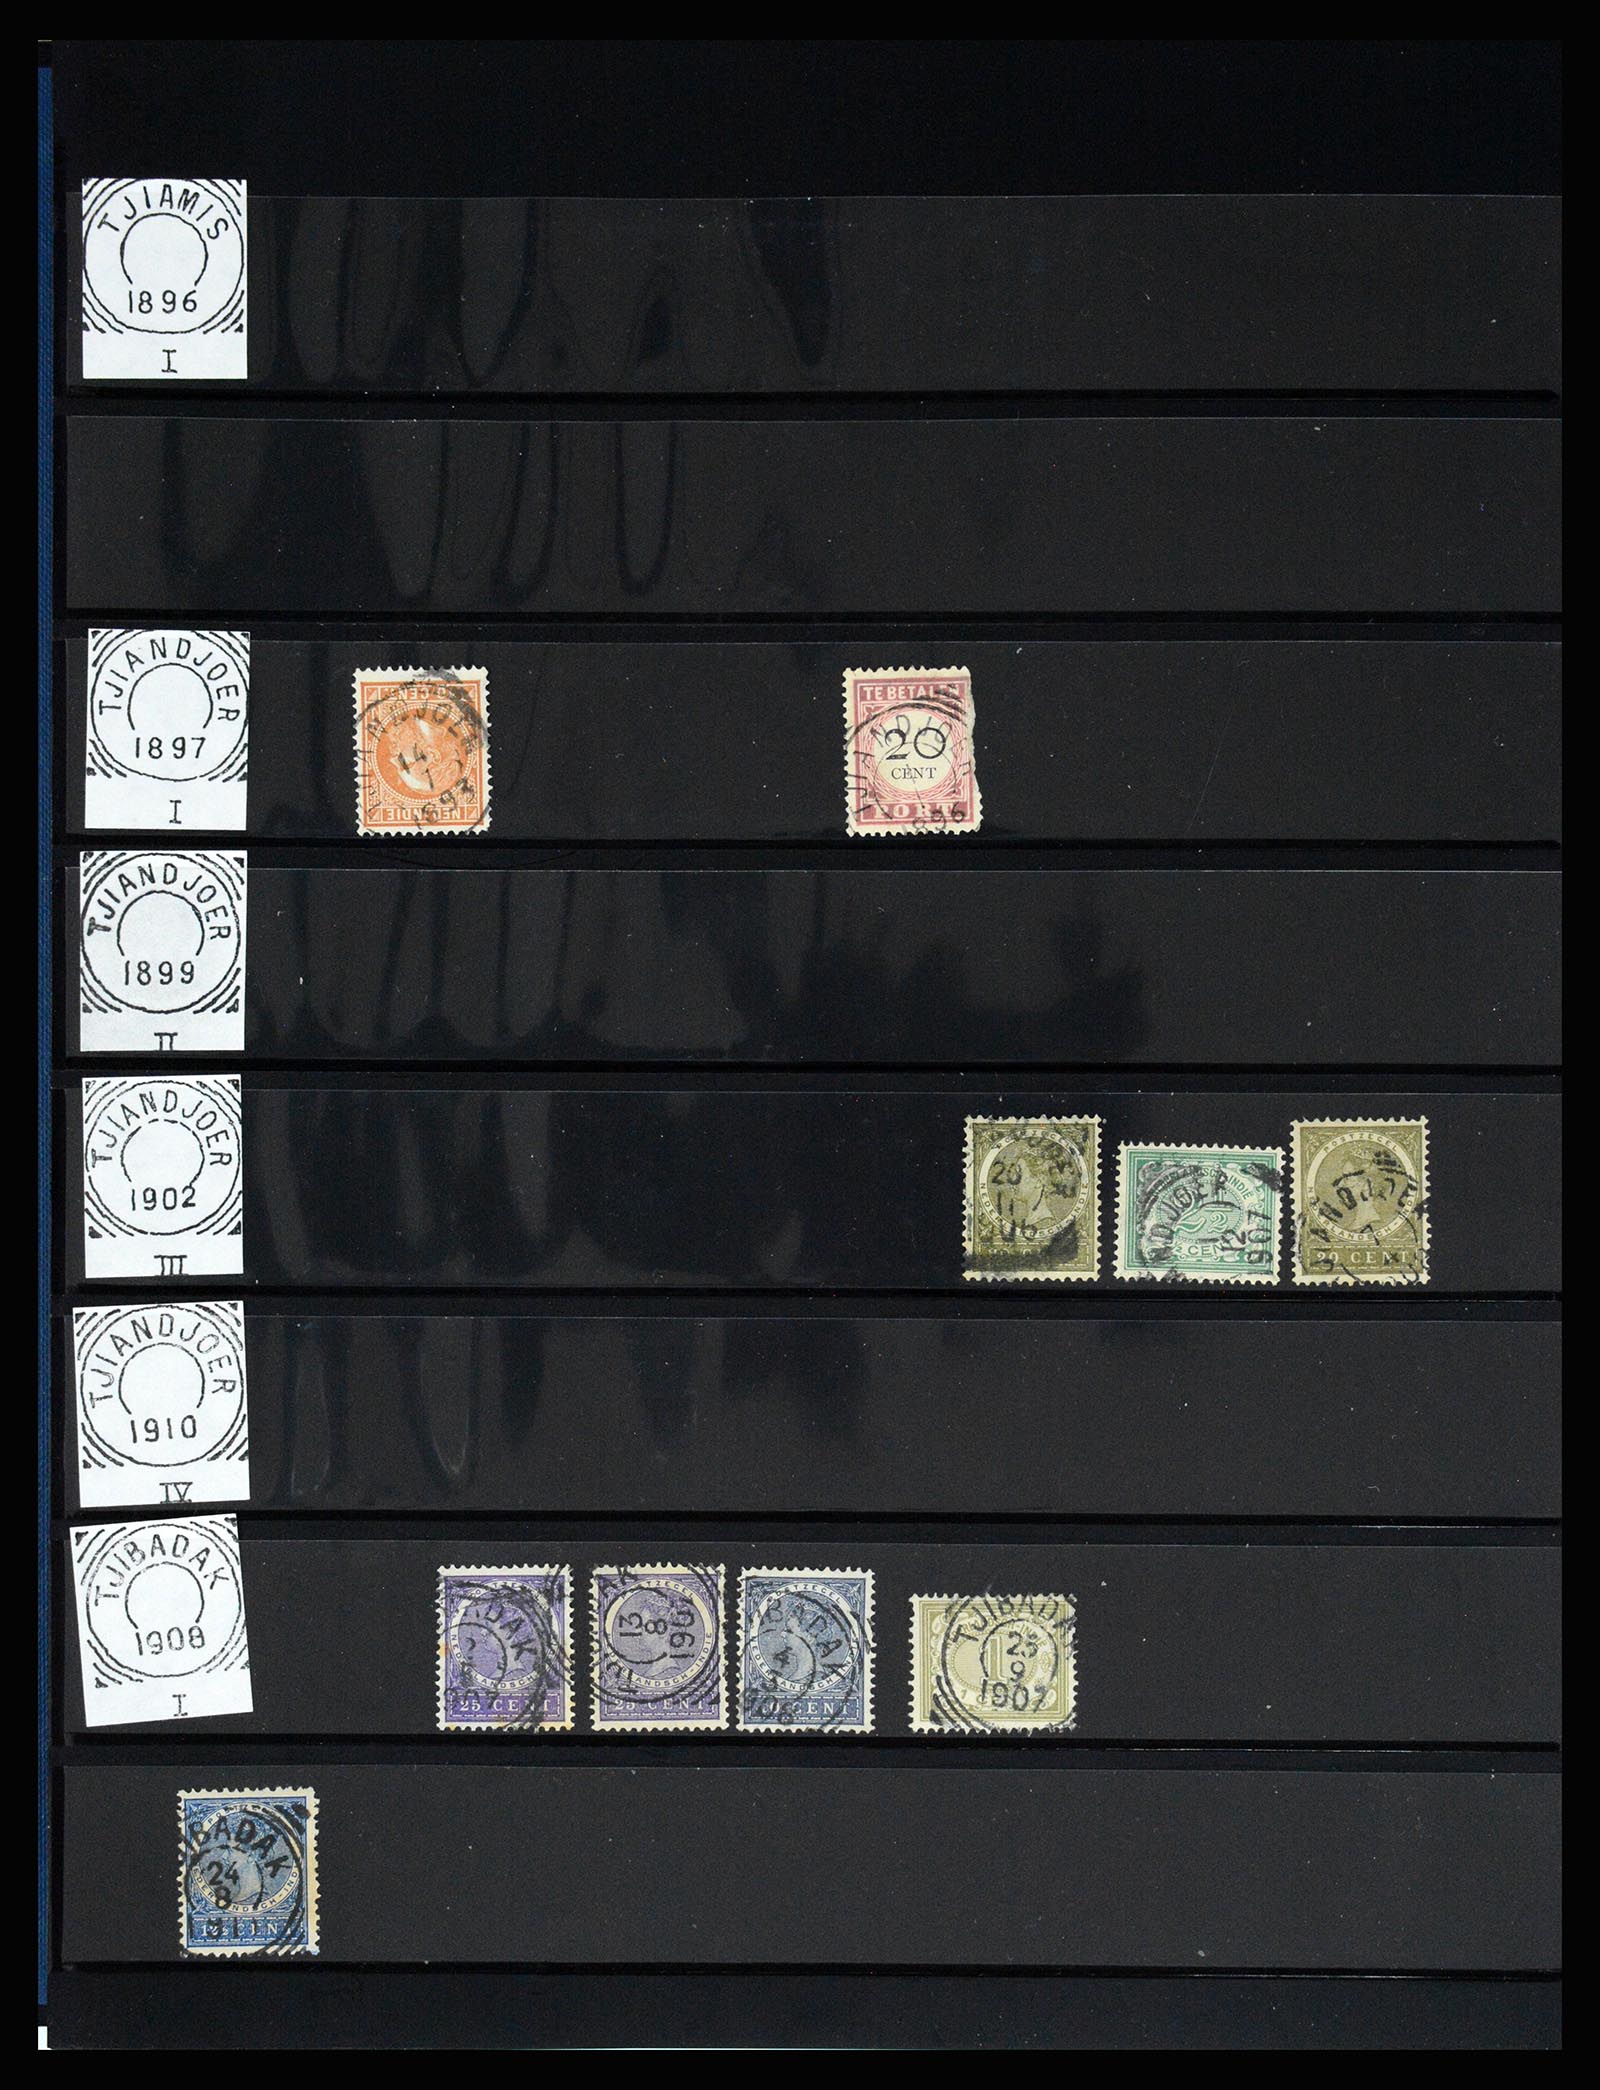 36512 159 - Stamp collection 36512 Nederlands Indië stempels 1872-1930.